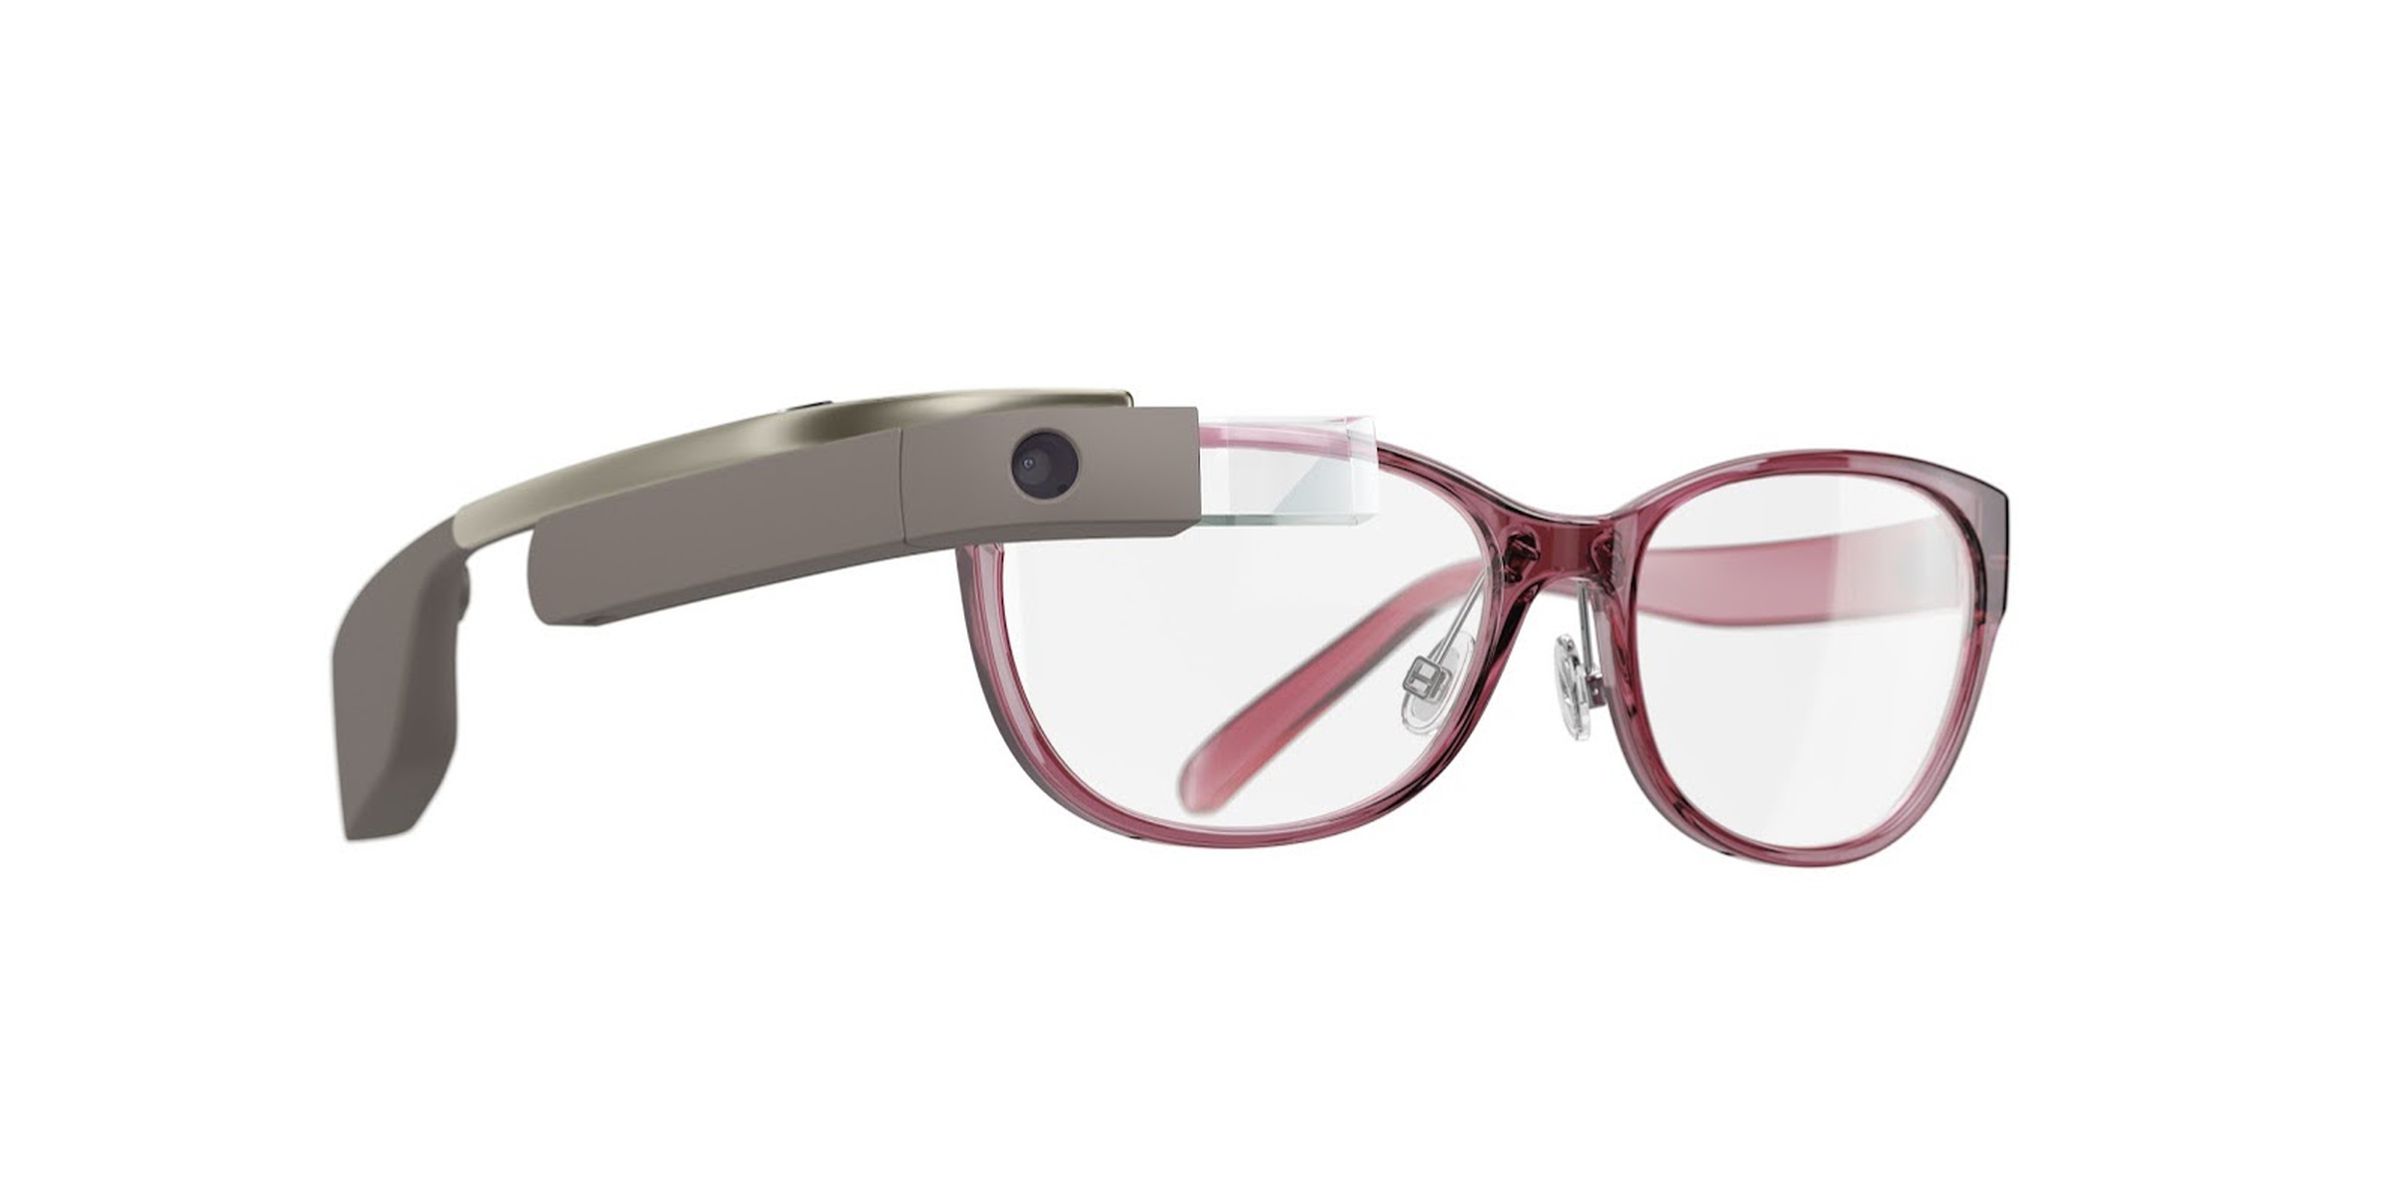 Google Glass DVF designs